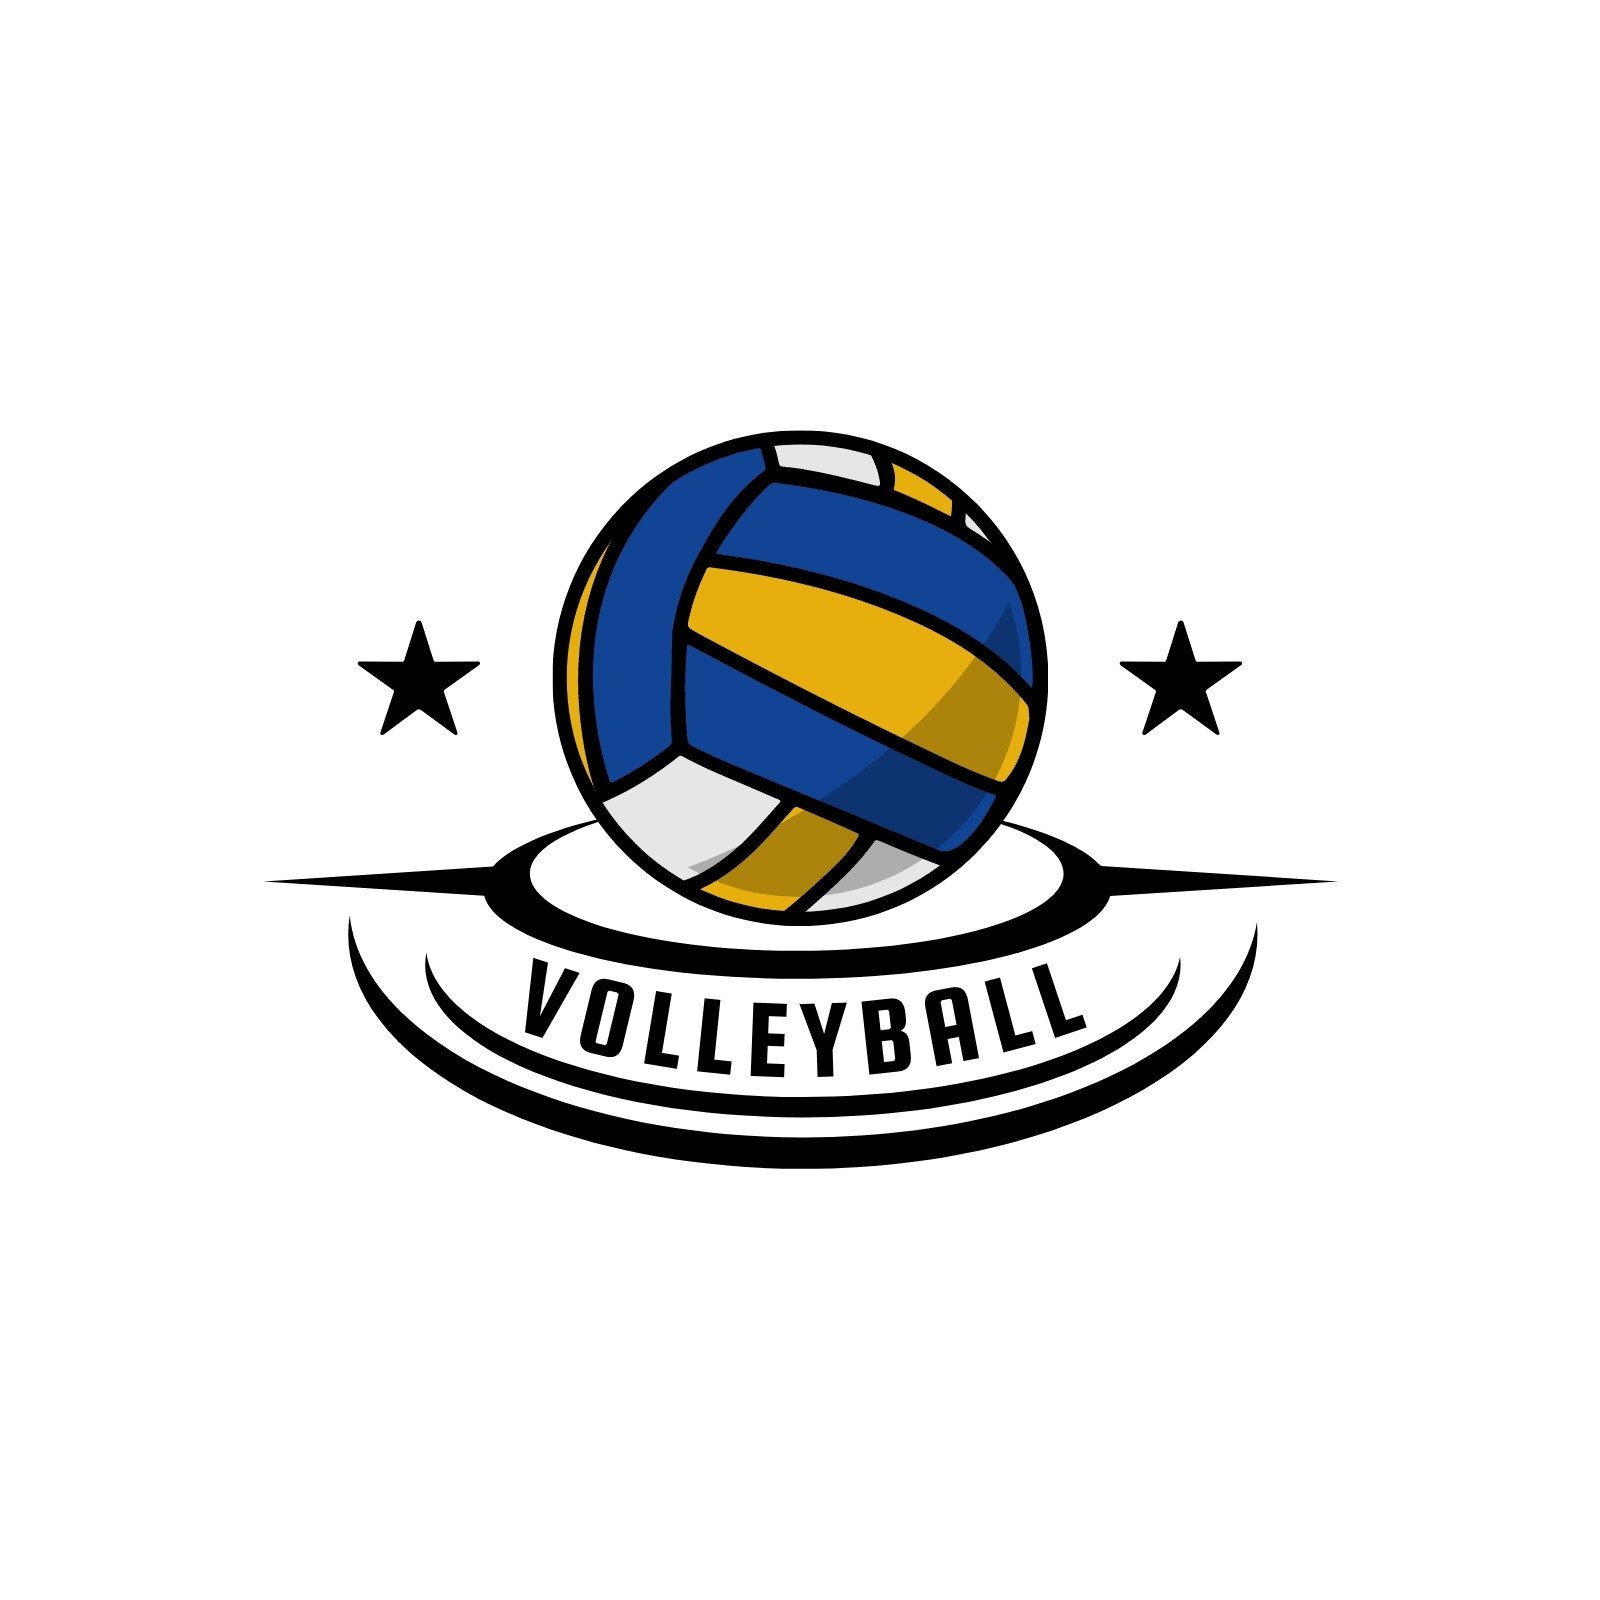 Volleyball Team Logo Design